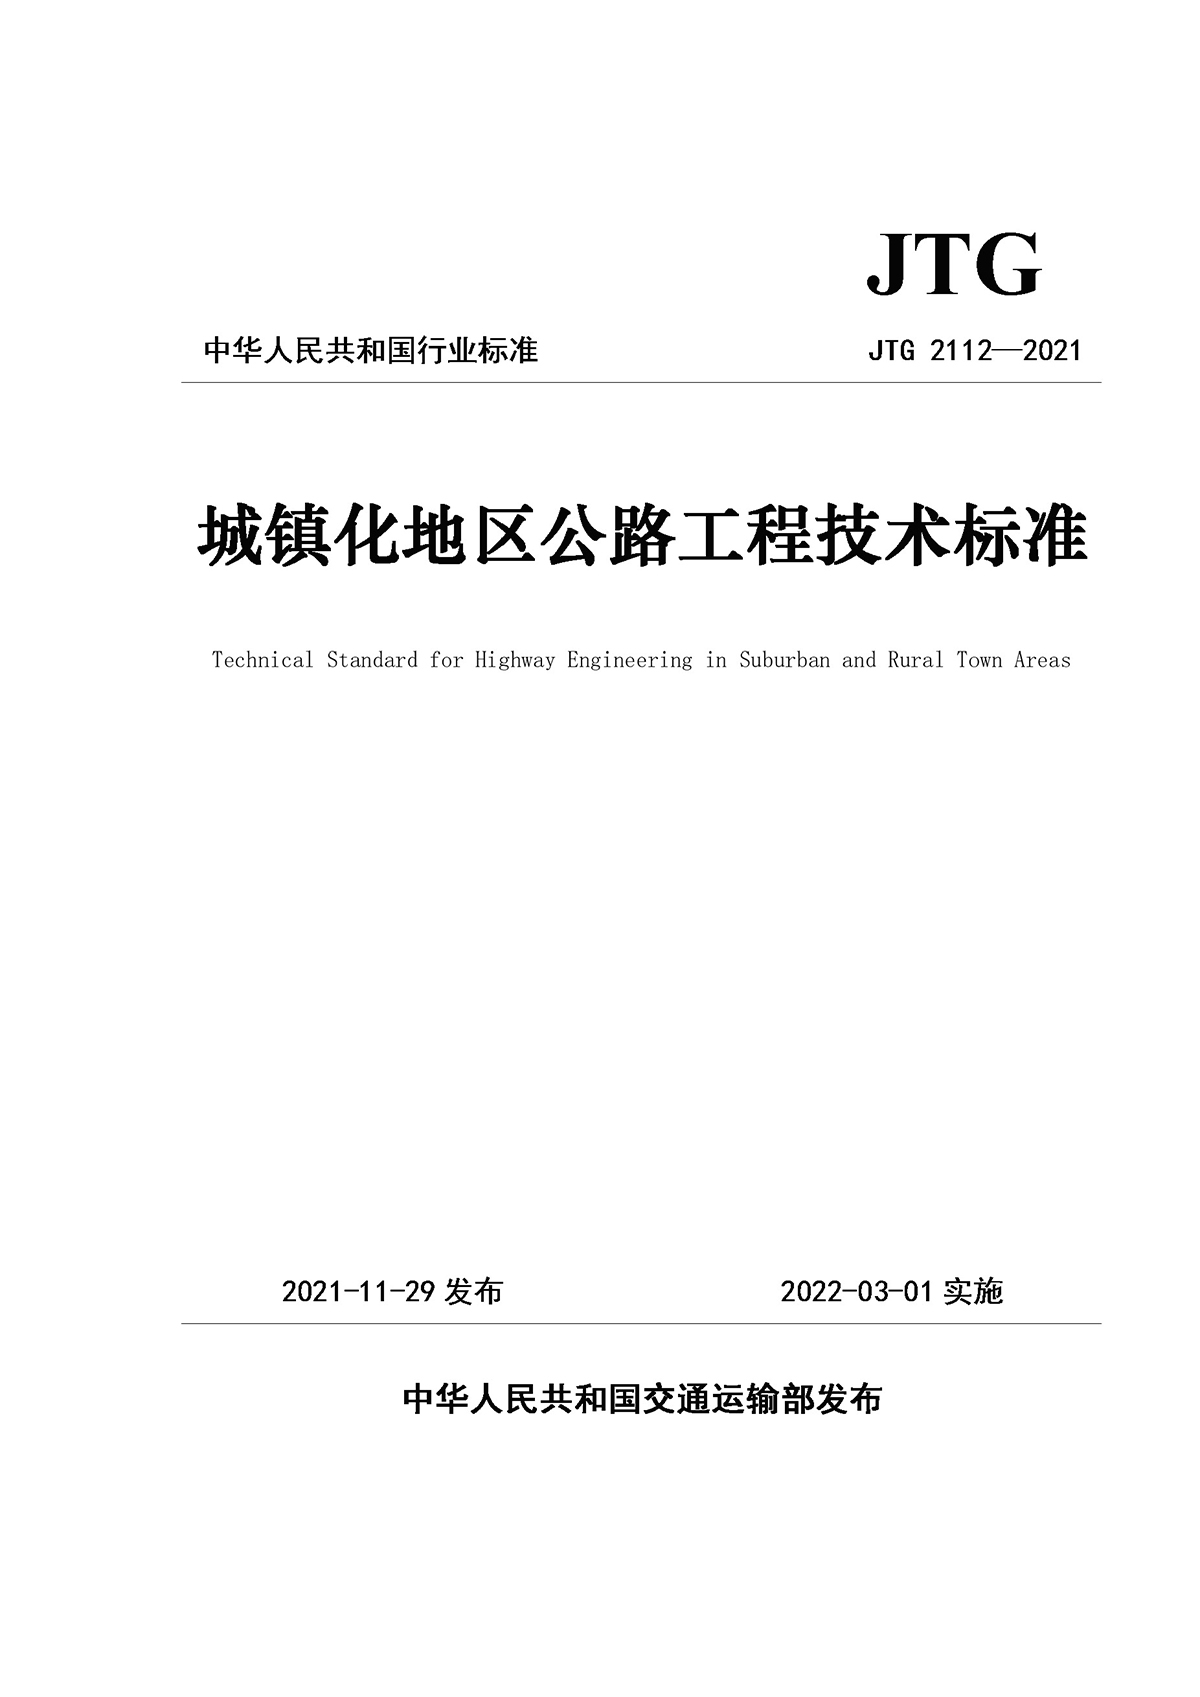 《城镇化地区公路工程技术标准》（JTG 2112—2021）_页面_1.jpg